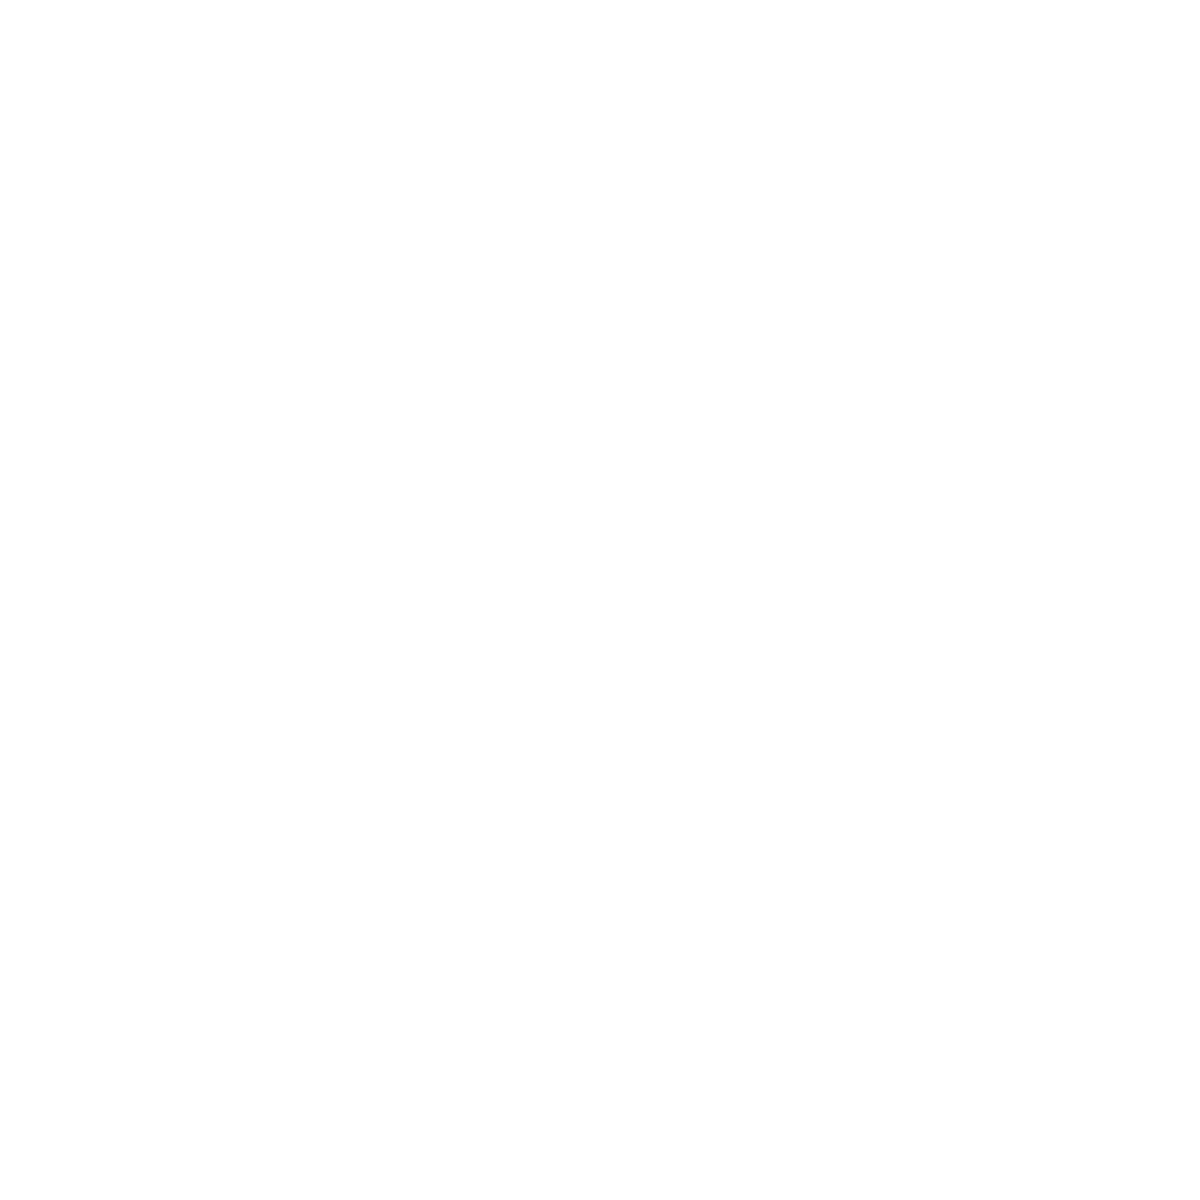 Disabled Veteran